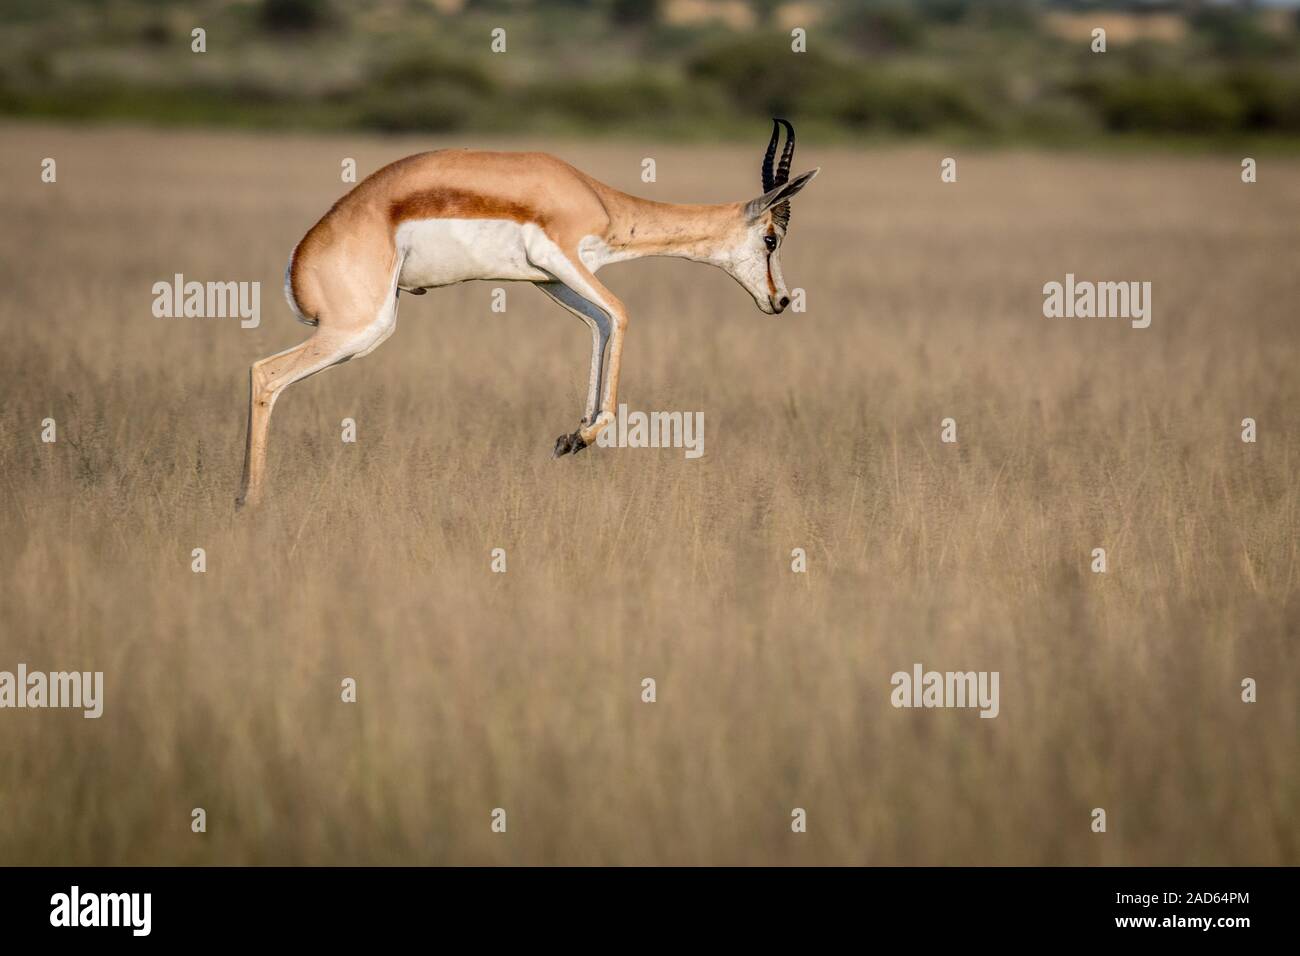 Springbok pronking dans le Kalahari central. Banque D'Images